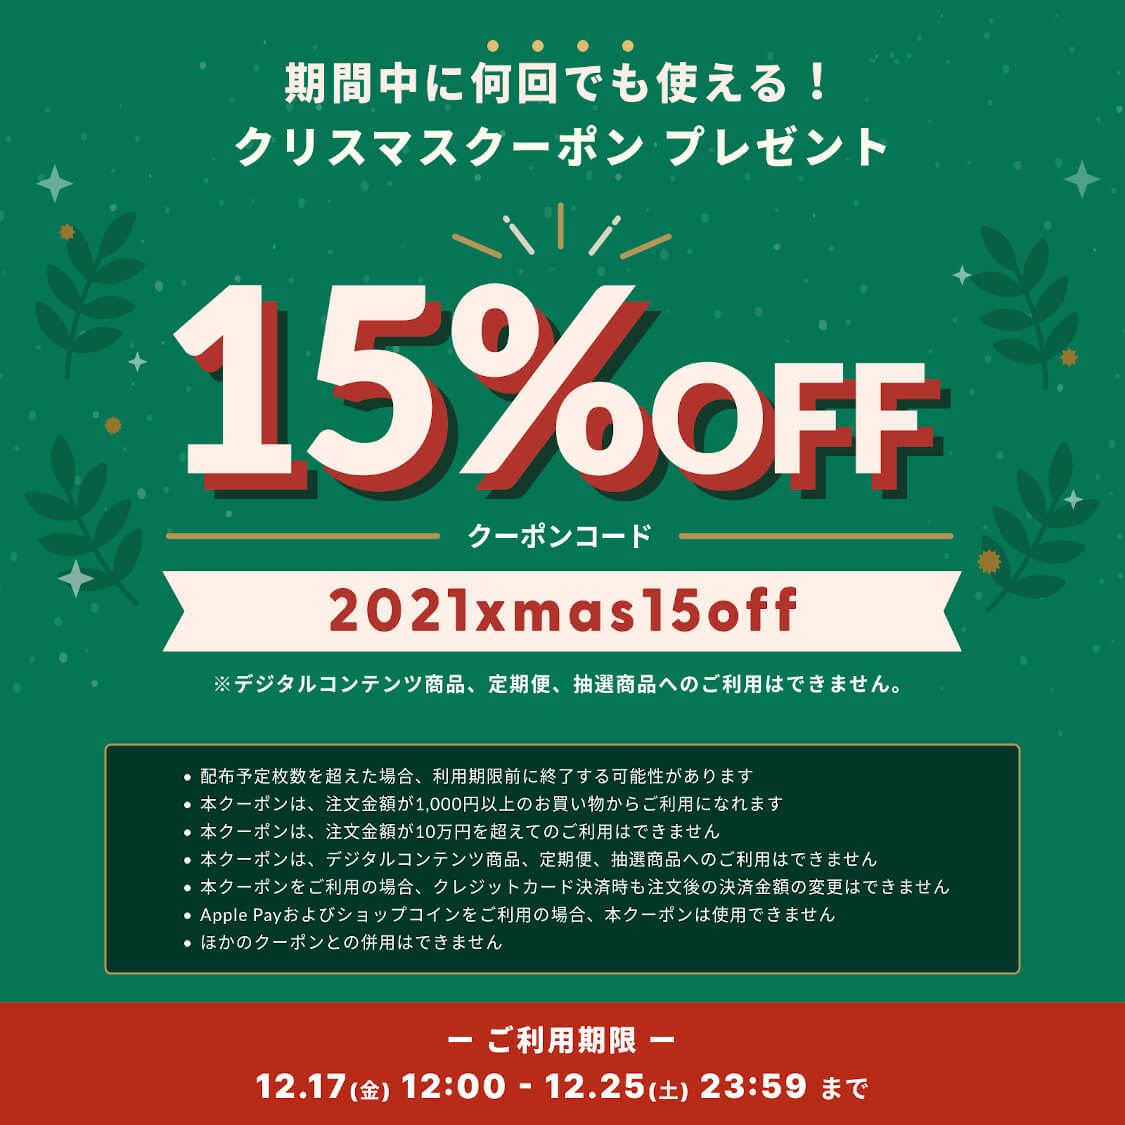 【12/17～12/25 期間限定】 クリスマスクーポンキャンペーン お得な15%OFFクーポン